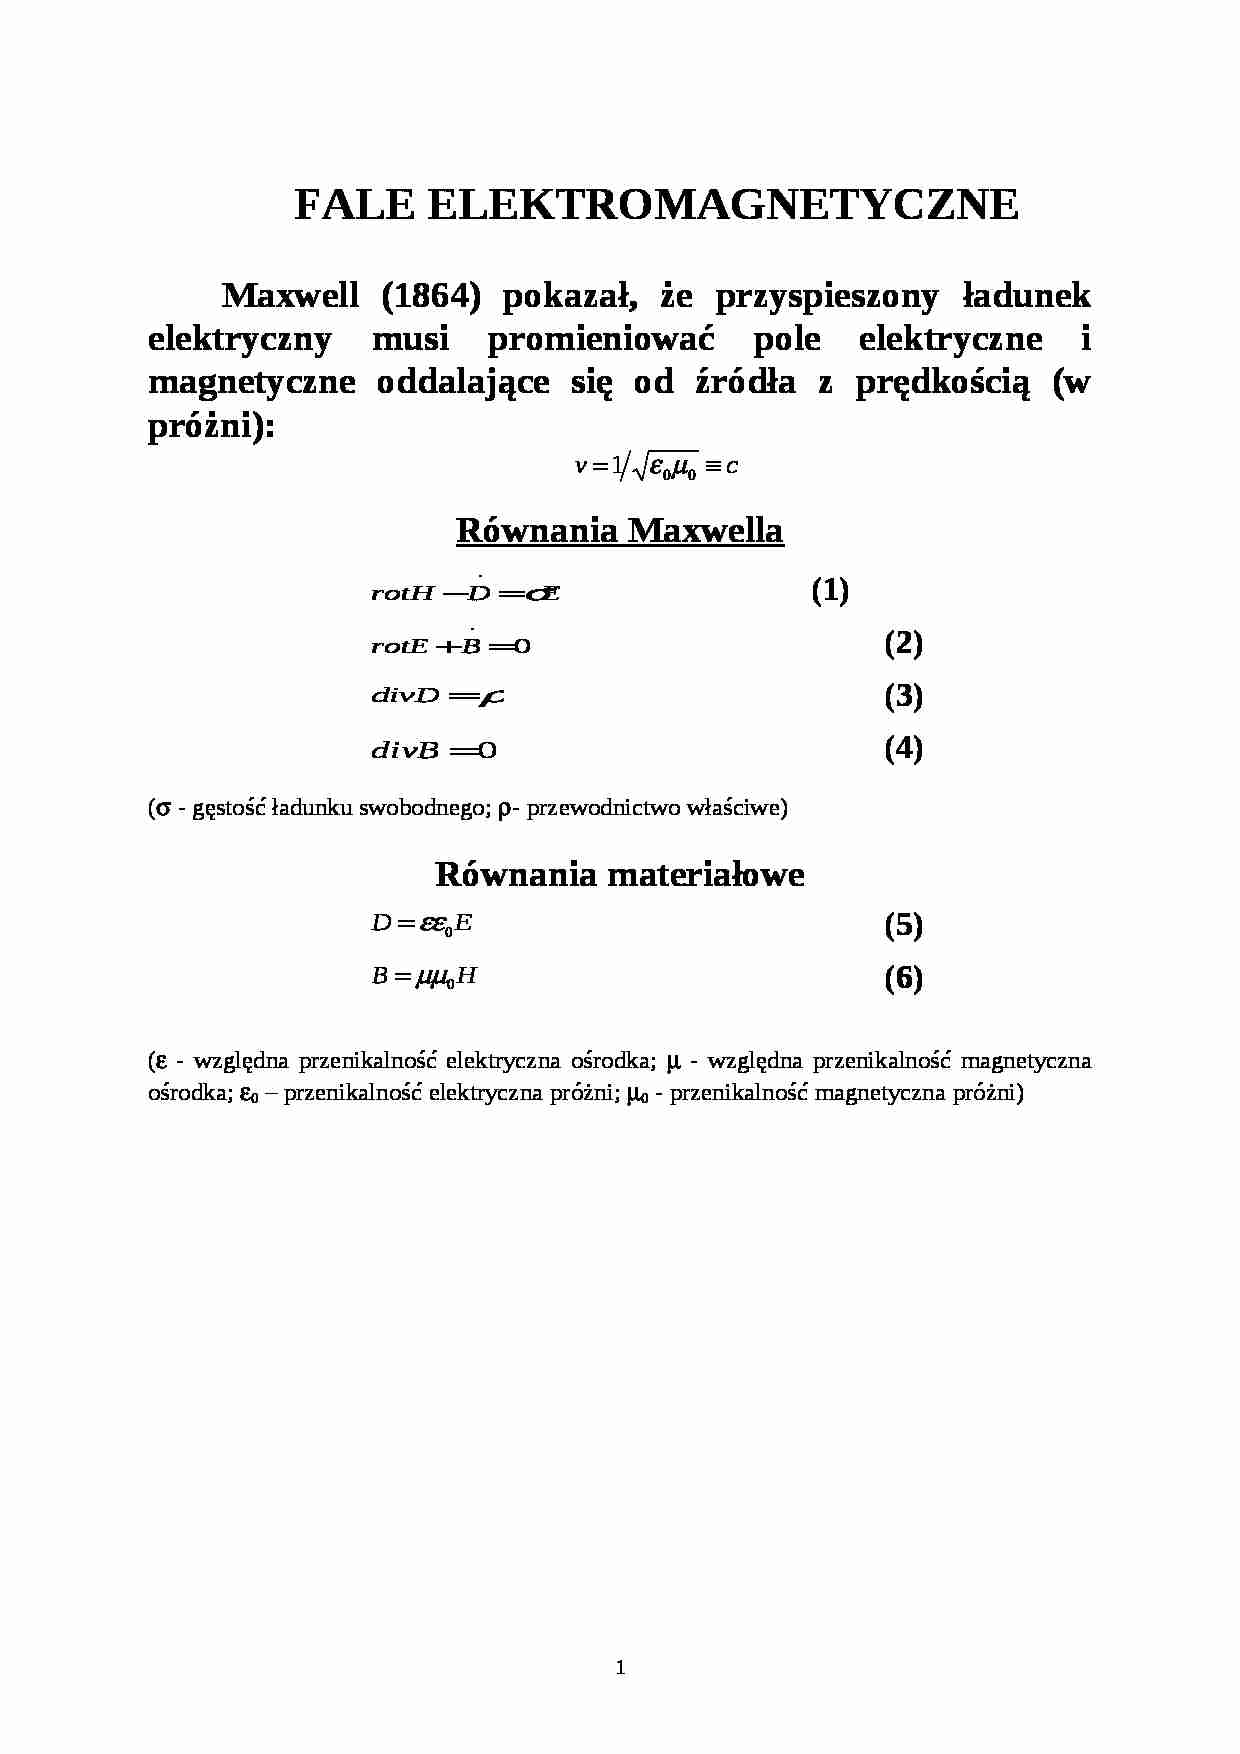 Fale elektromagnetyczne - fizyka - Równania Maxwella - strona 1